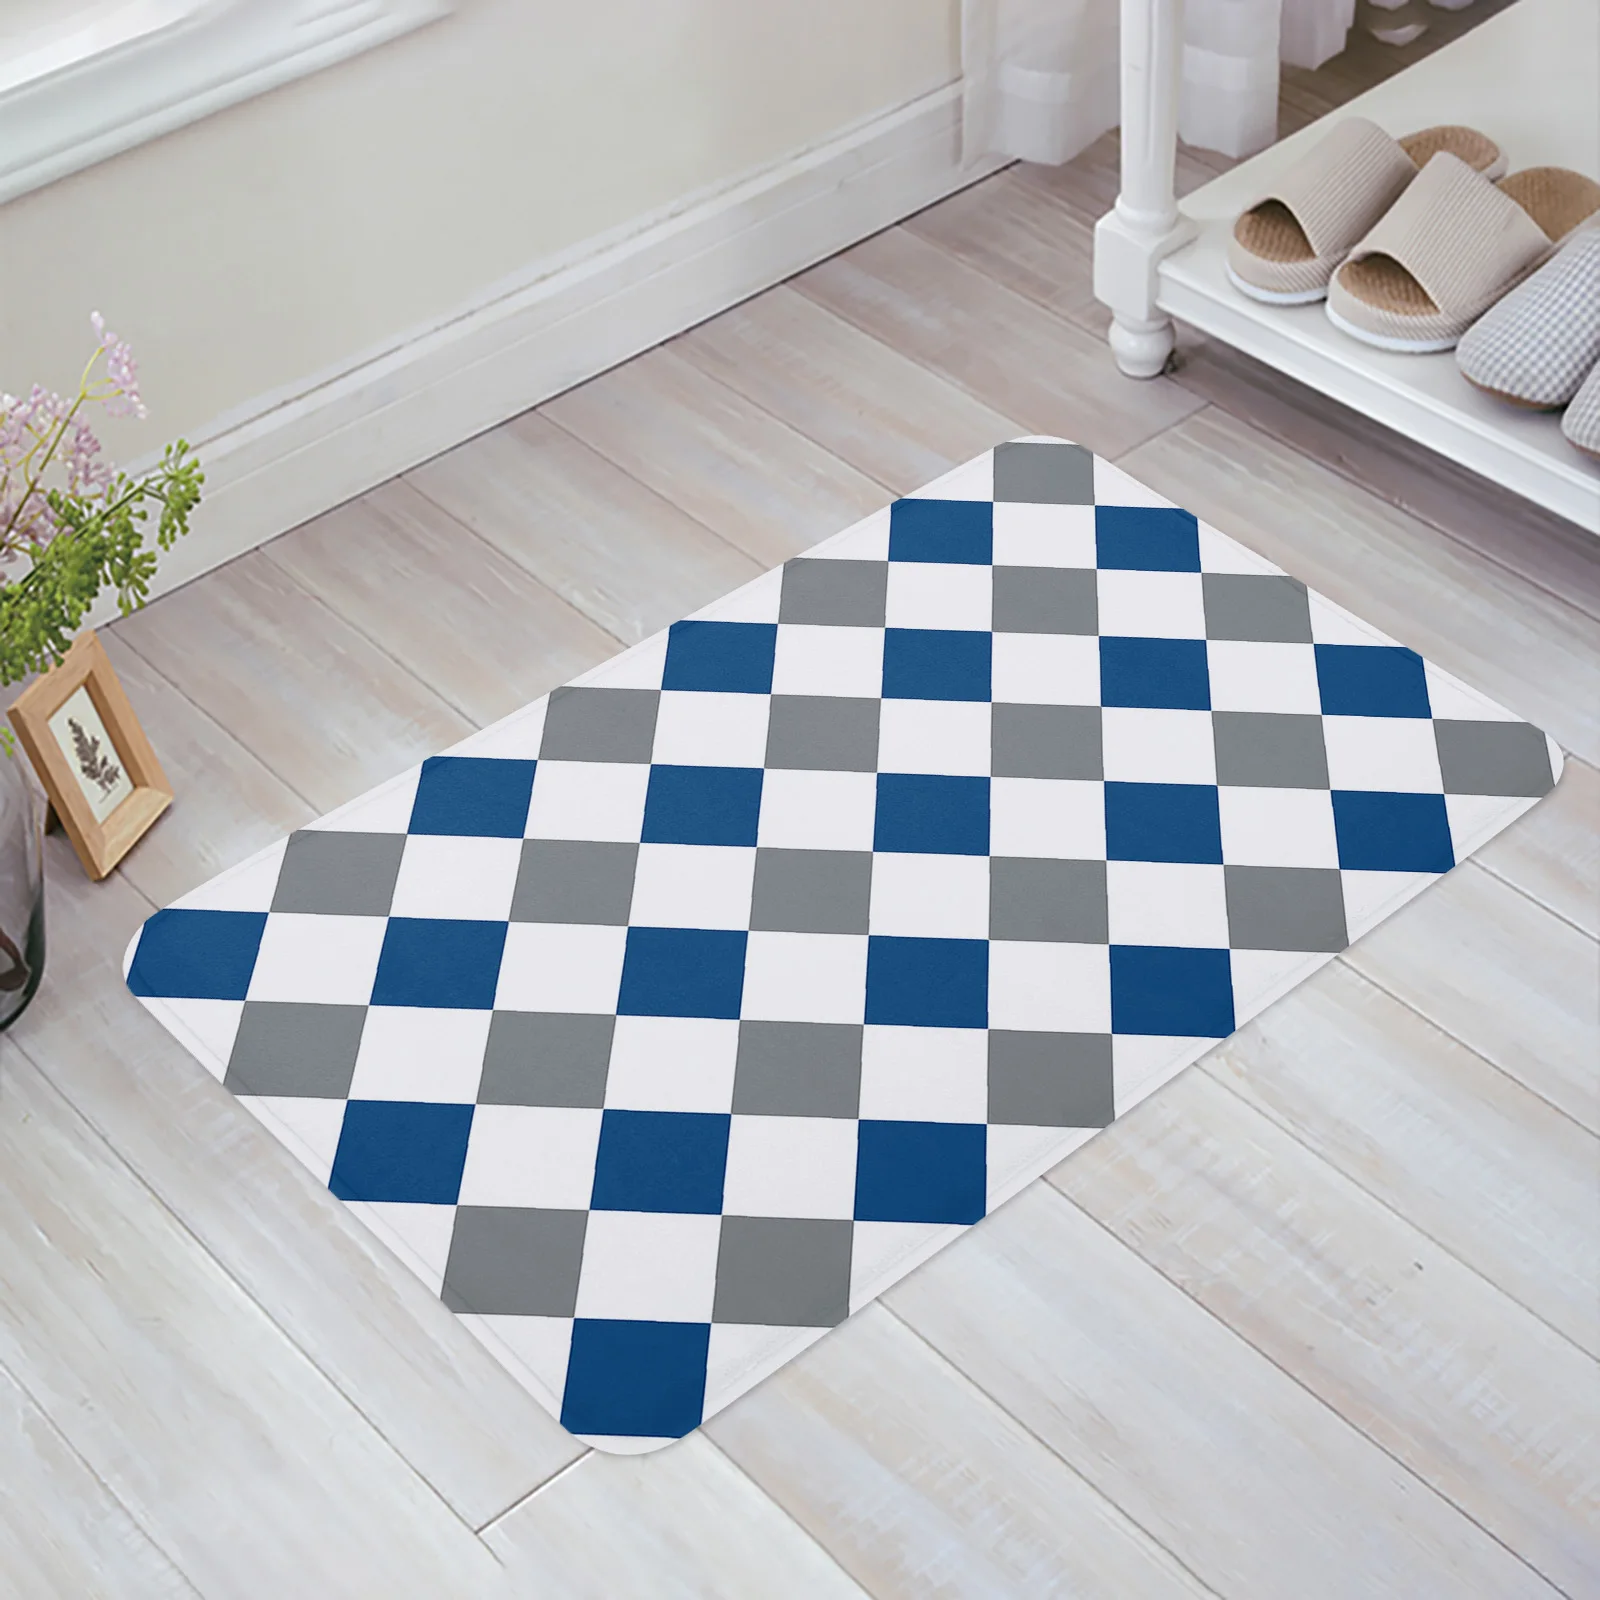 

Rhombus Lattice Texture Blue-Gray Entrance Welcome Doormat Bedroom Living Room Household Doormat Carpet Bathroom Non-slip Mat